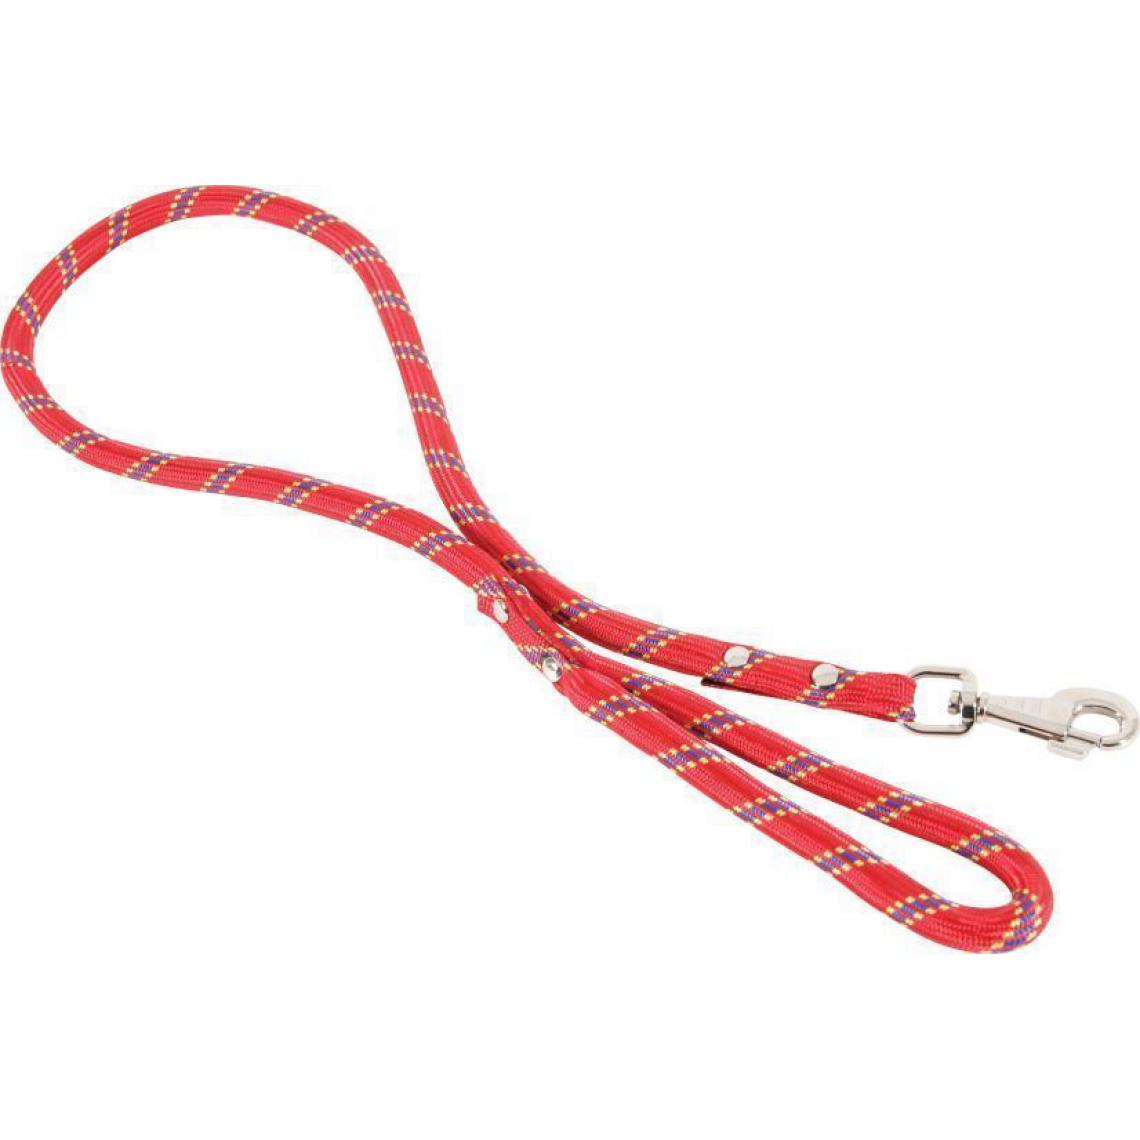 Zolux - Laisse nylon corde lasso rouge 6 m - Laisse pour chien